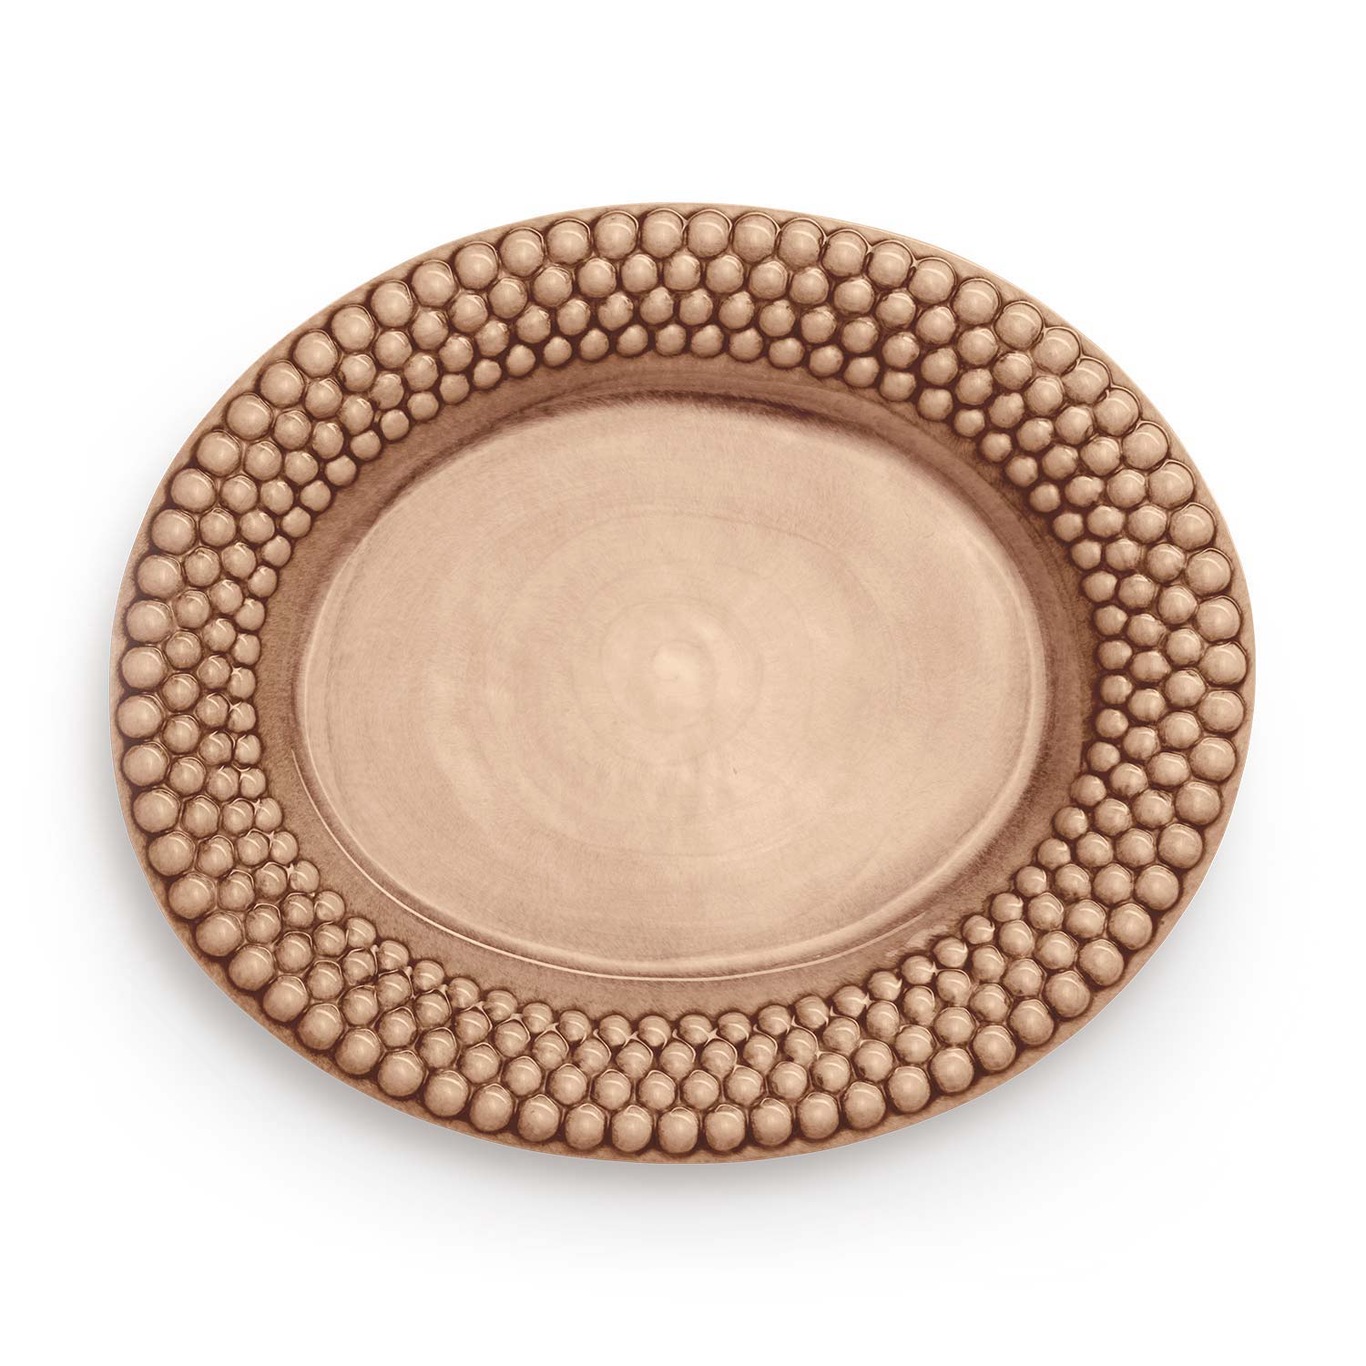 Bubbles Oval Platter 35 cm, Cinnamon